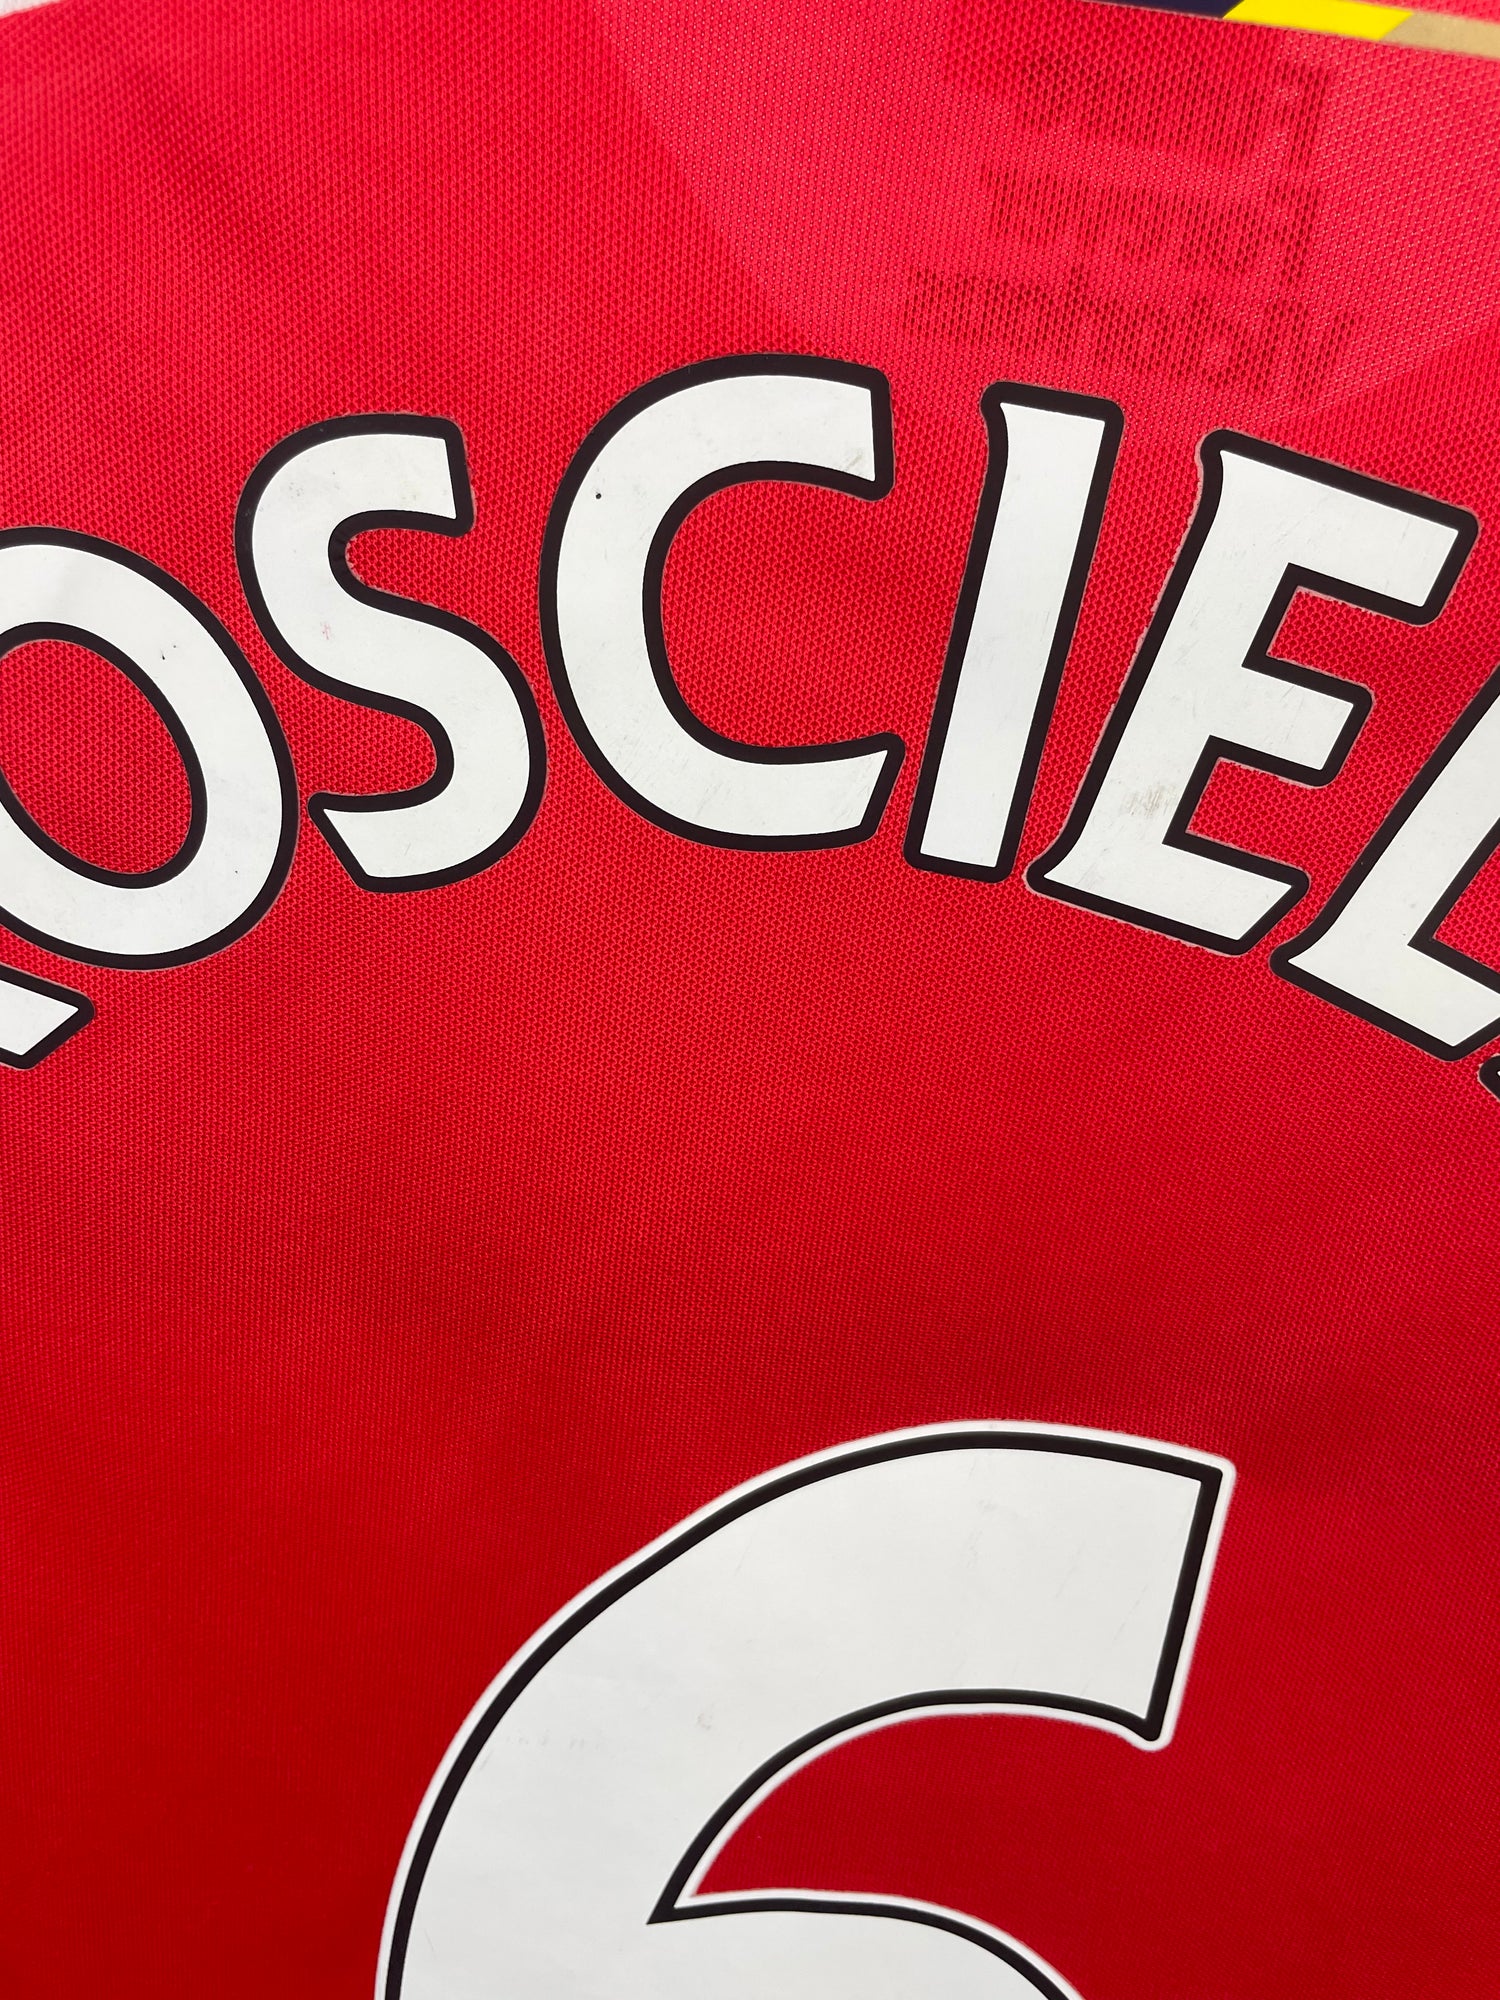 Laurent Koscielny Arsenal 14/15 hjemmebanetrøje - M